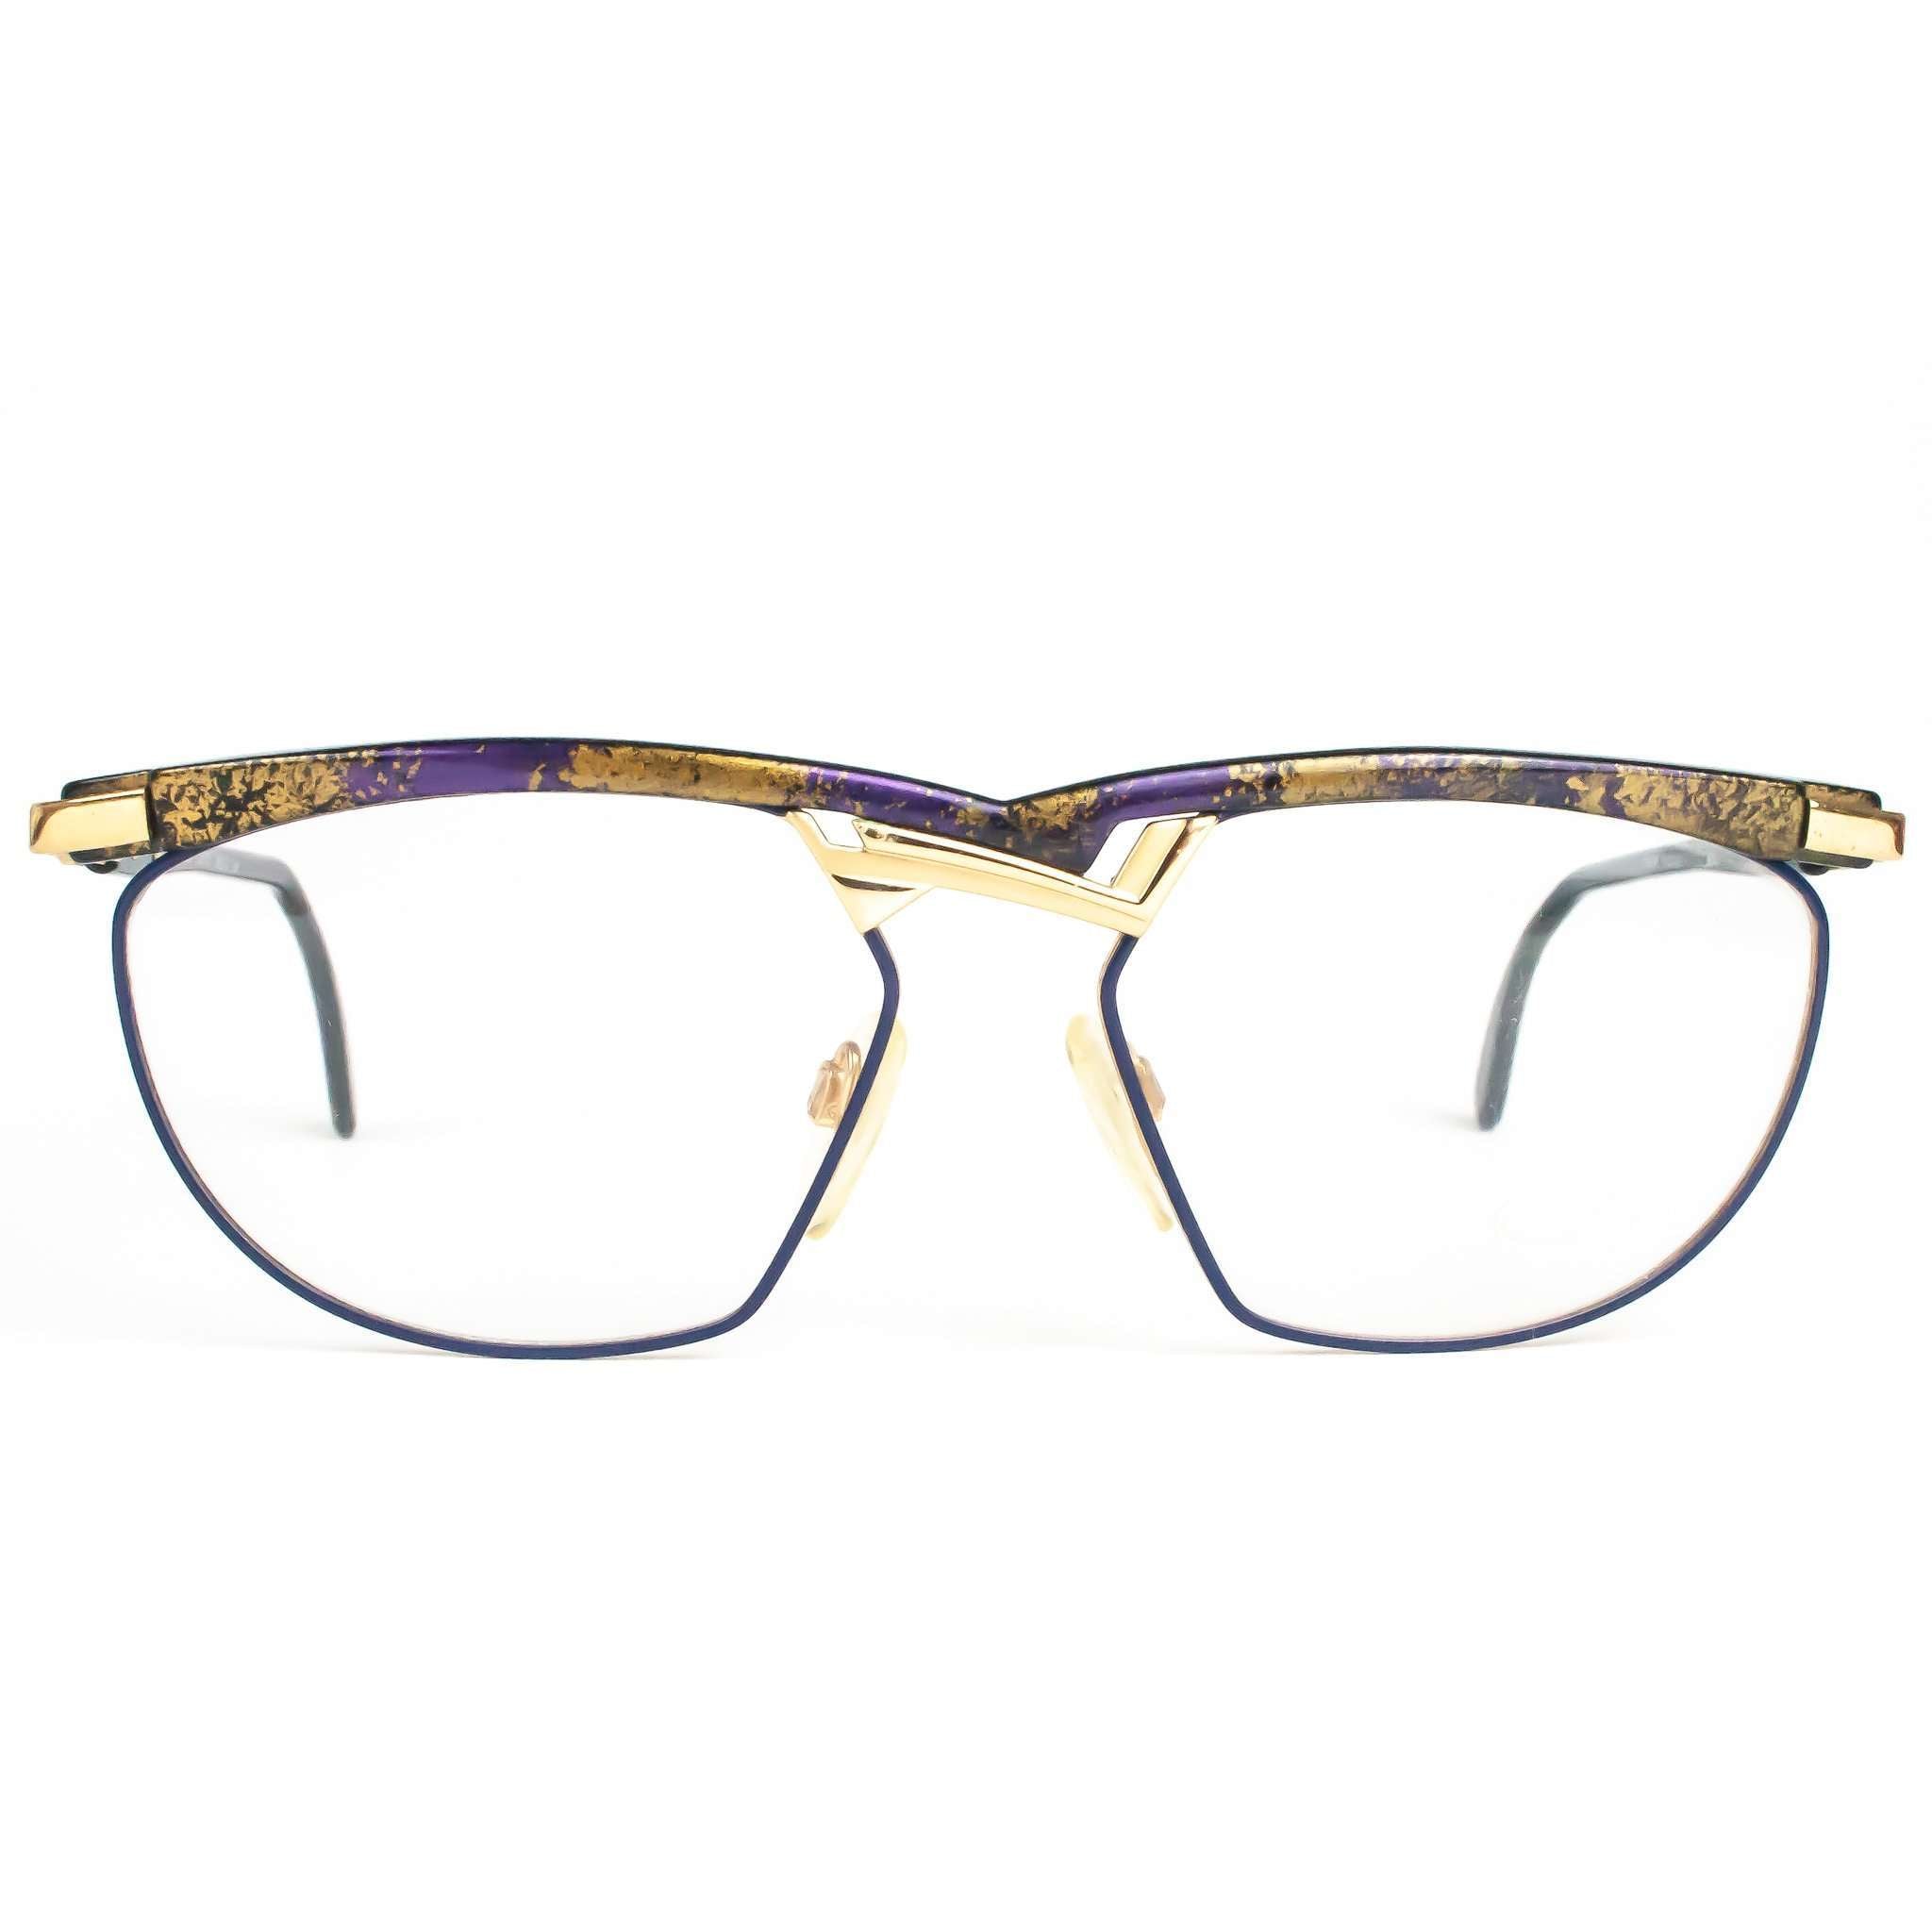 Cazal Model 252 Gold And Purple Retro Glasses